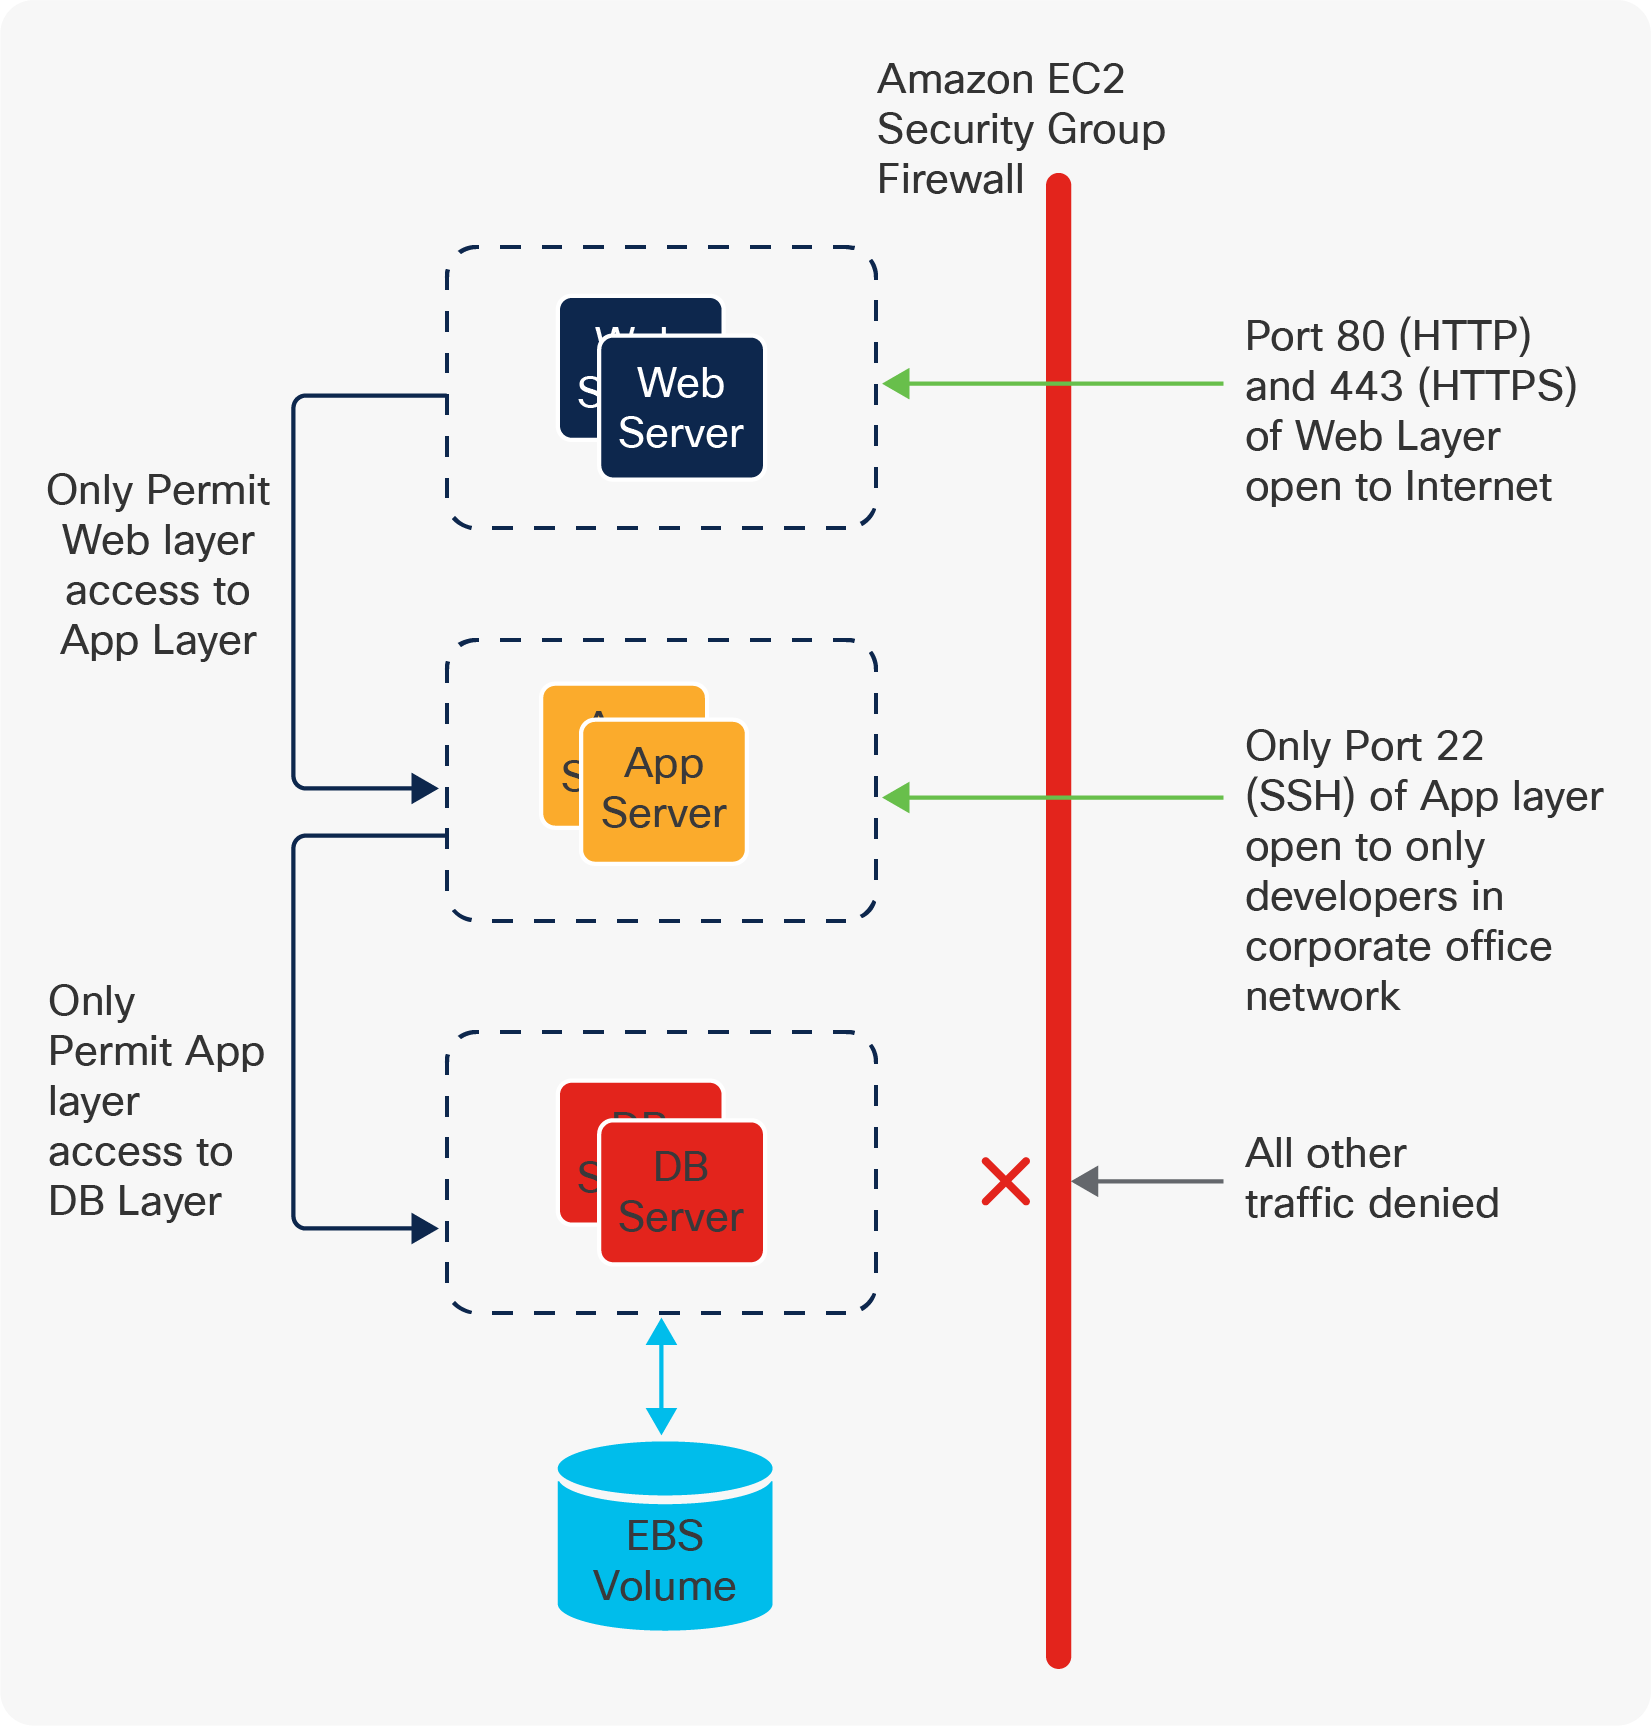 AWS SG-based network model